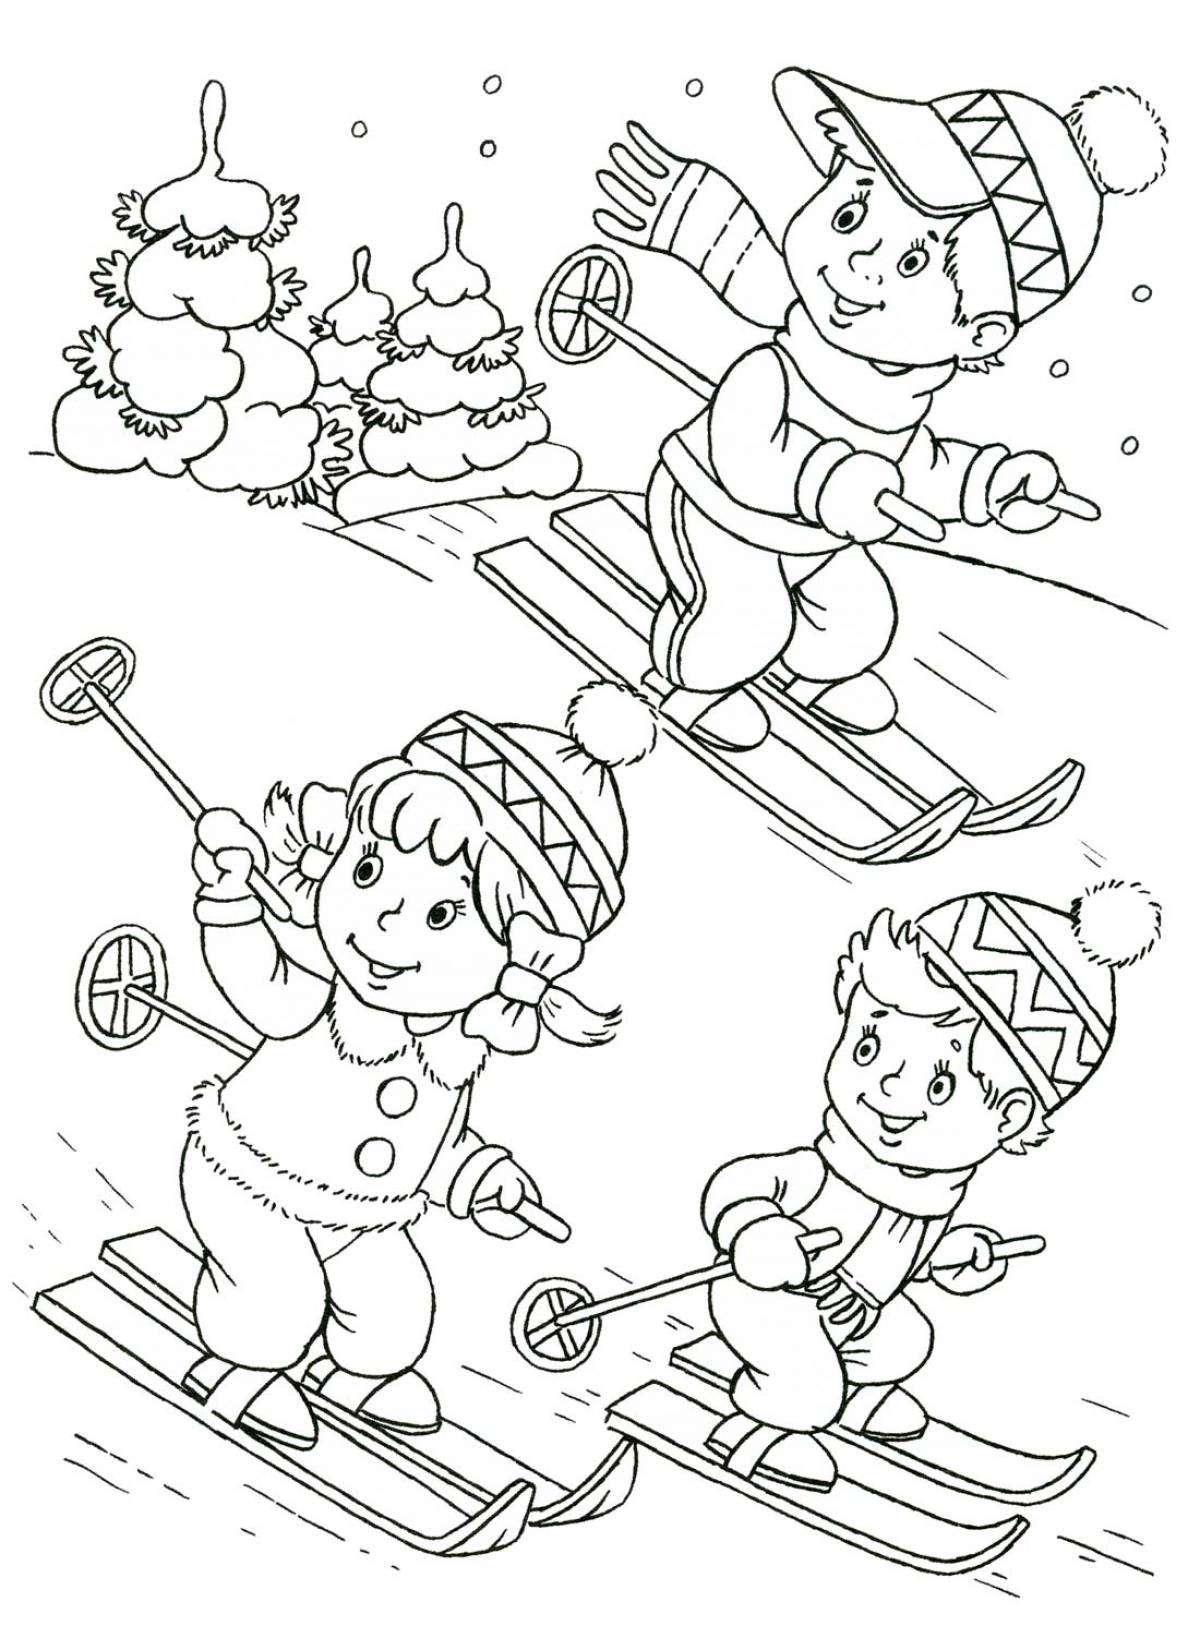 Children on skis